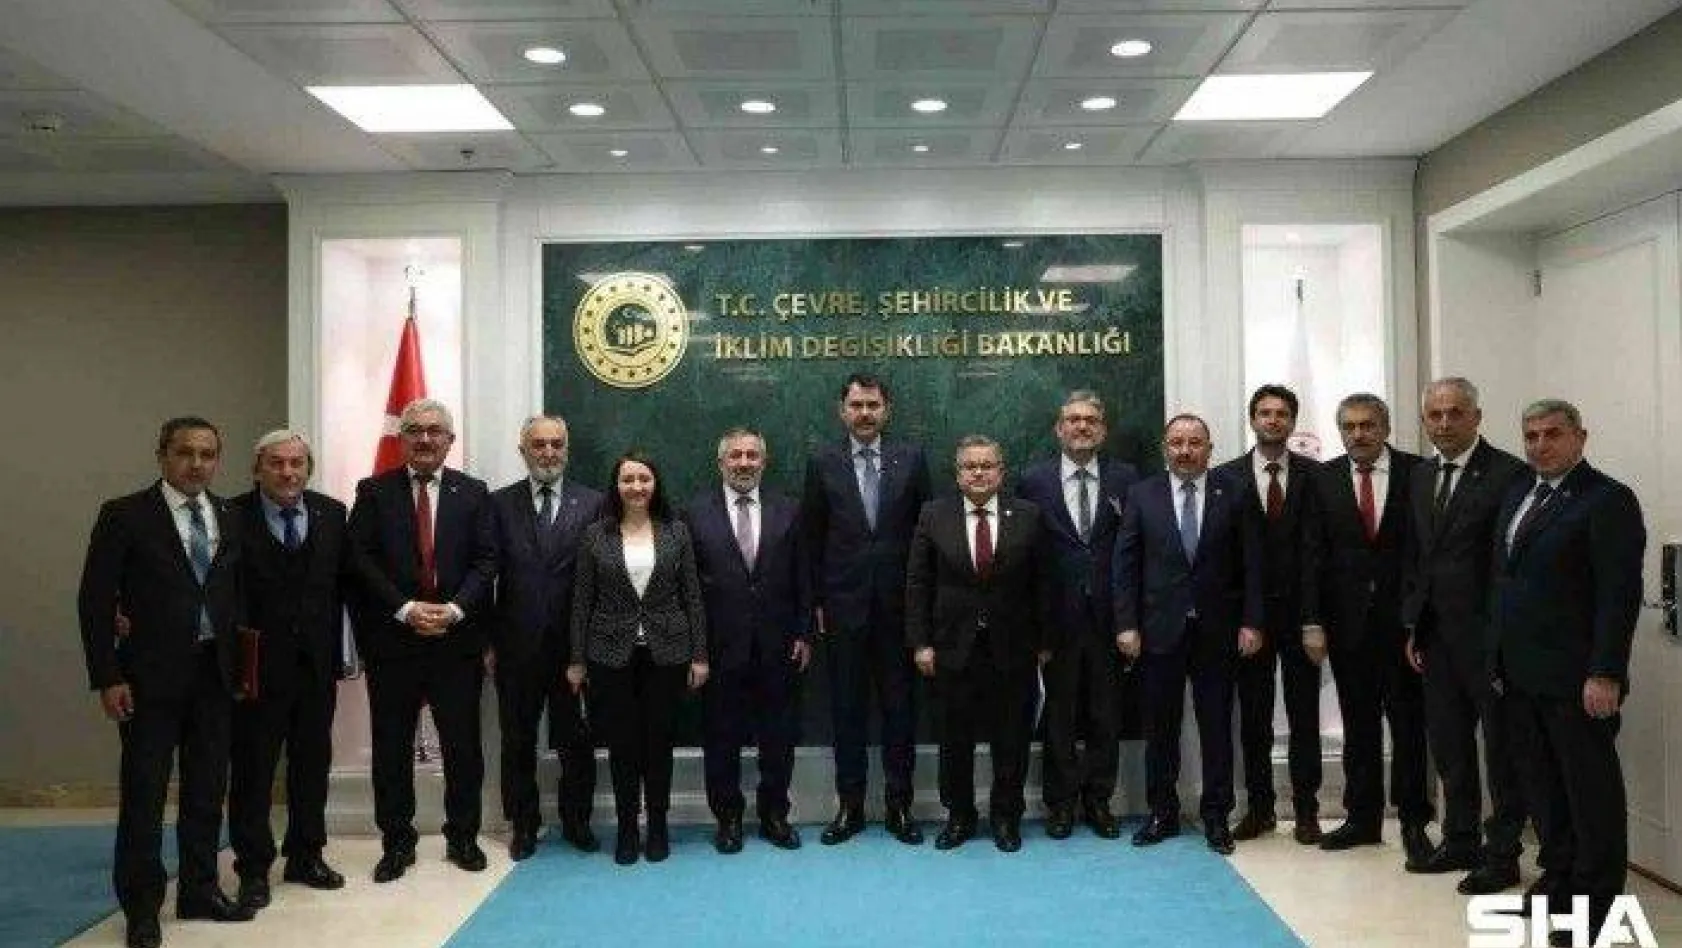 Cumhur İttifakı'ndan Çevre, Şehircilik ve İklim Değişikliği Bakanı Murat Kurum'a ziyaret